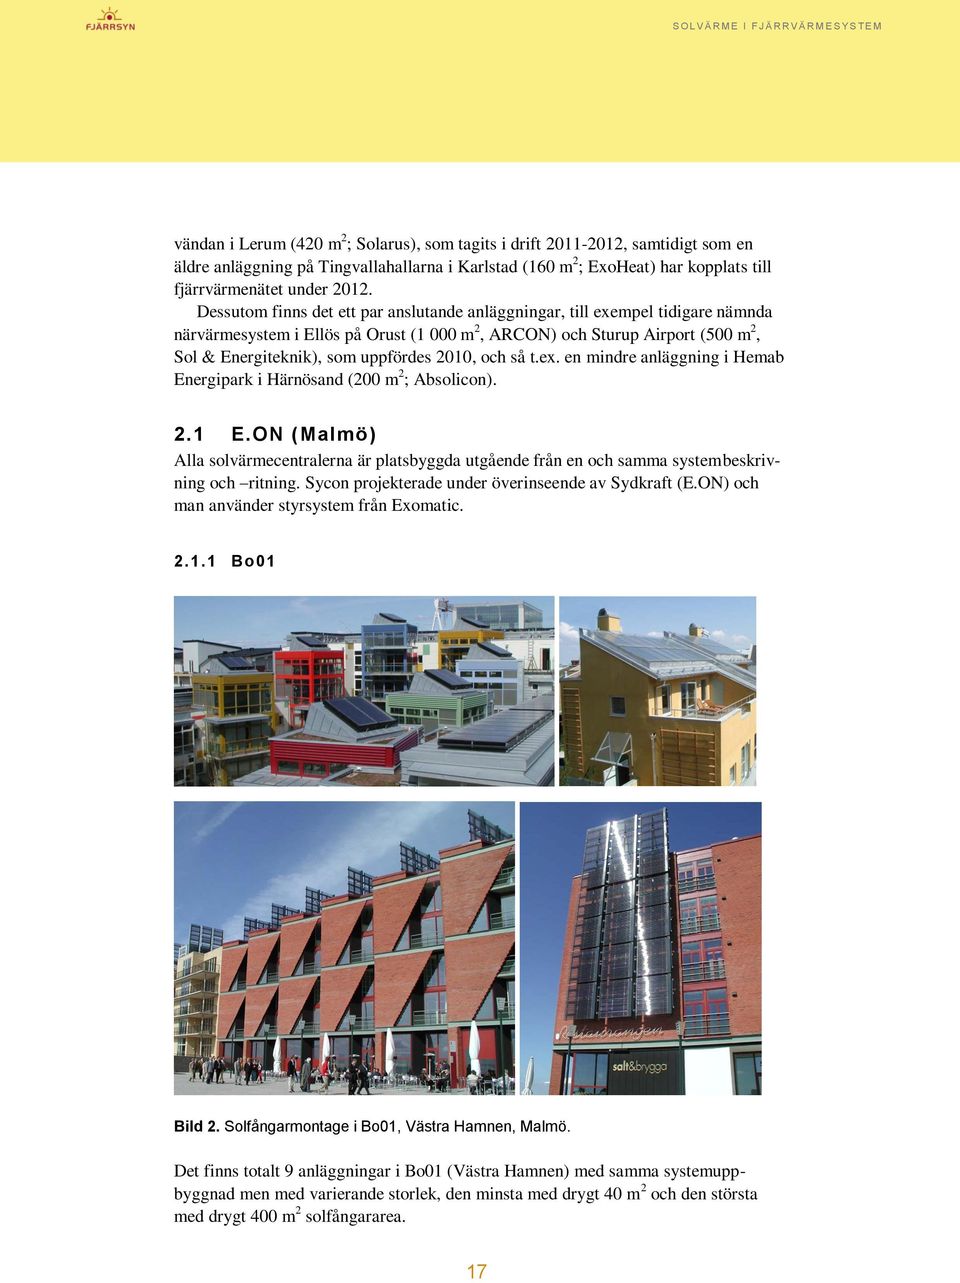 2010, och så t.ex. en mindre anläggning i Hemab Energipark i Härnösand (200 m 2 ; Absolicon). 2.1 E.